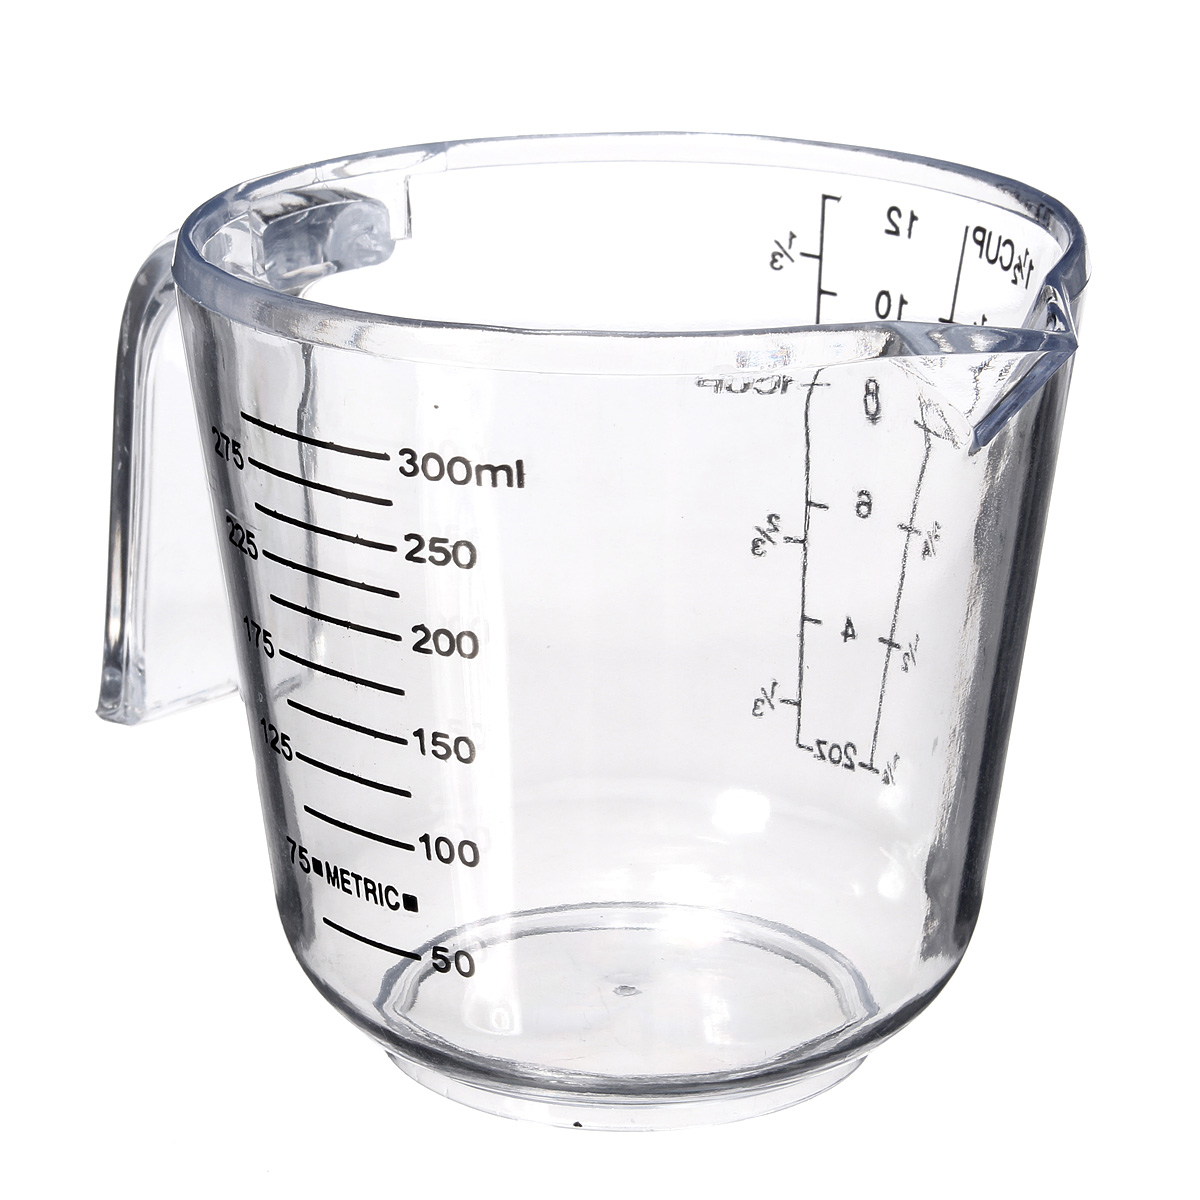 Чашка воды в мл. 100-150 Мл воды это. Граммы в стаканах. 150-200 Мл воды. 150 Граммовый стакан.